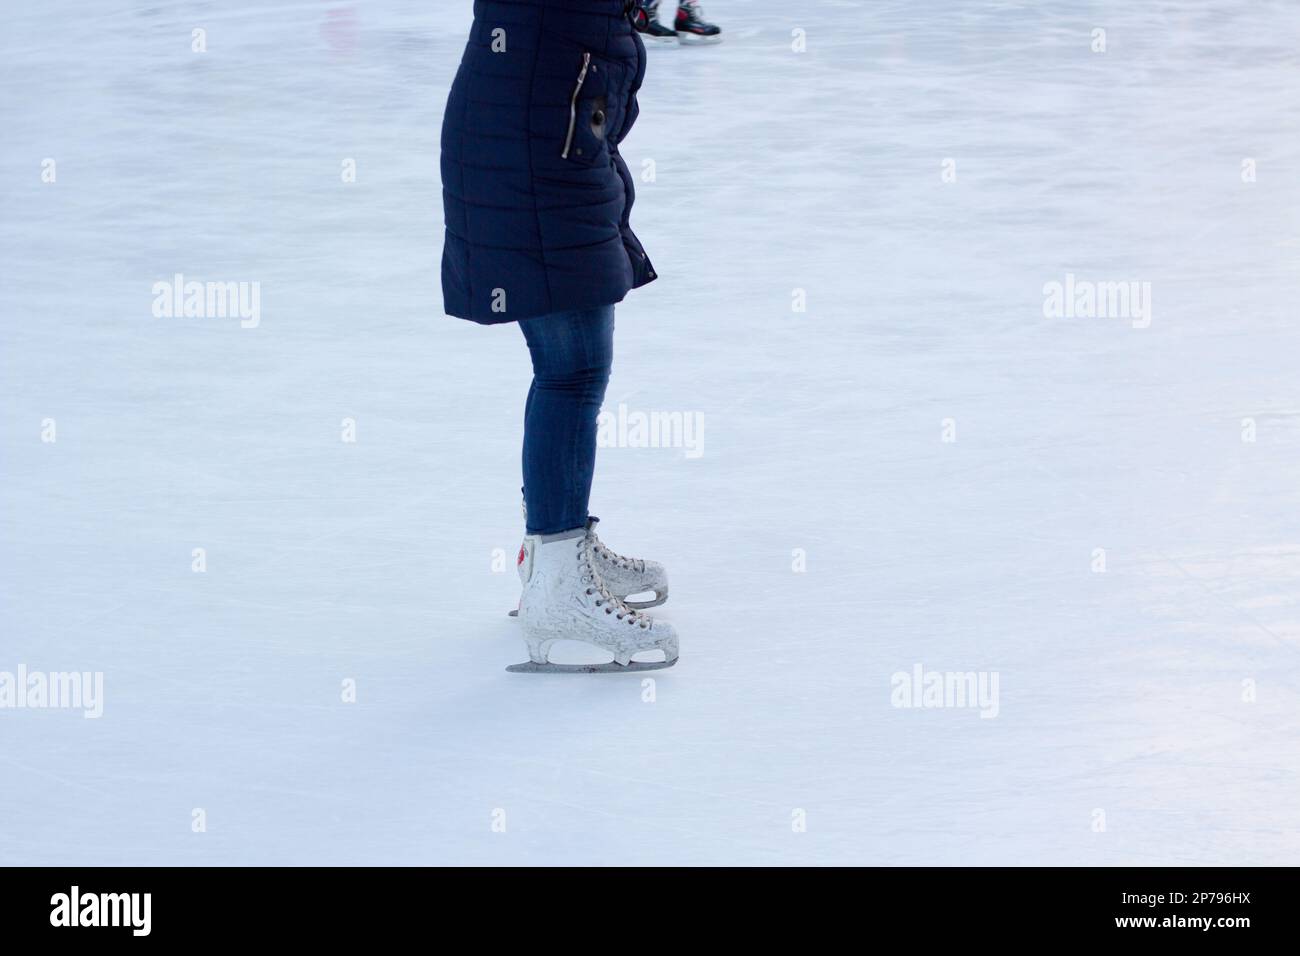 el gerl monta sobre hielo en patines Foto de stock